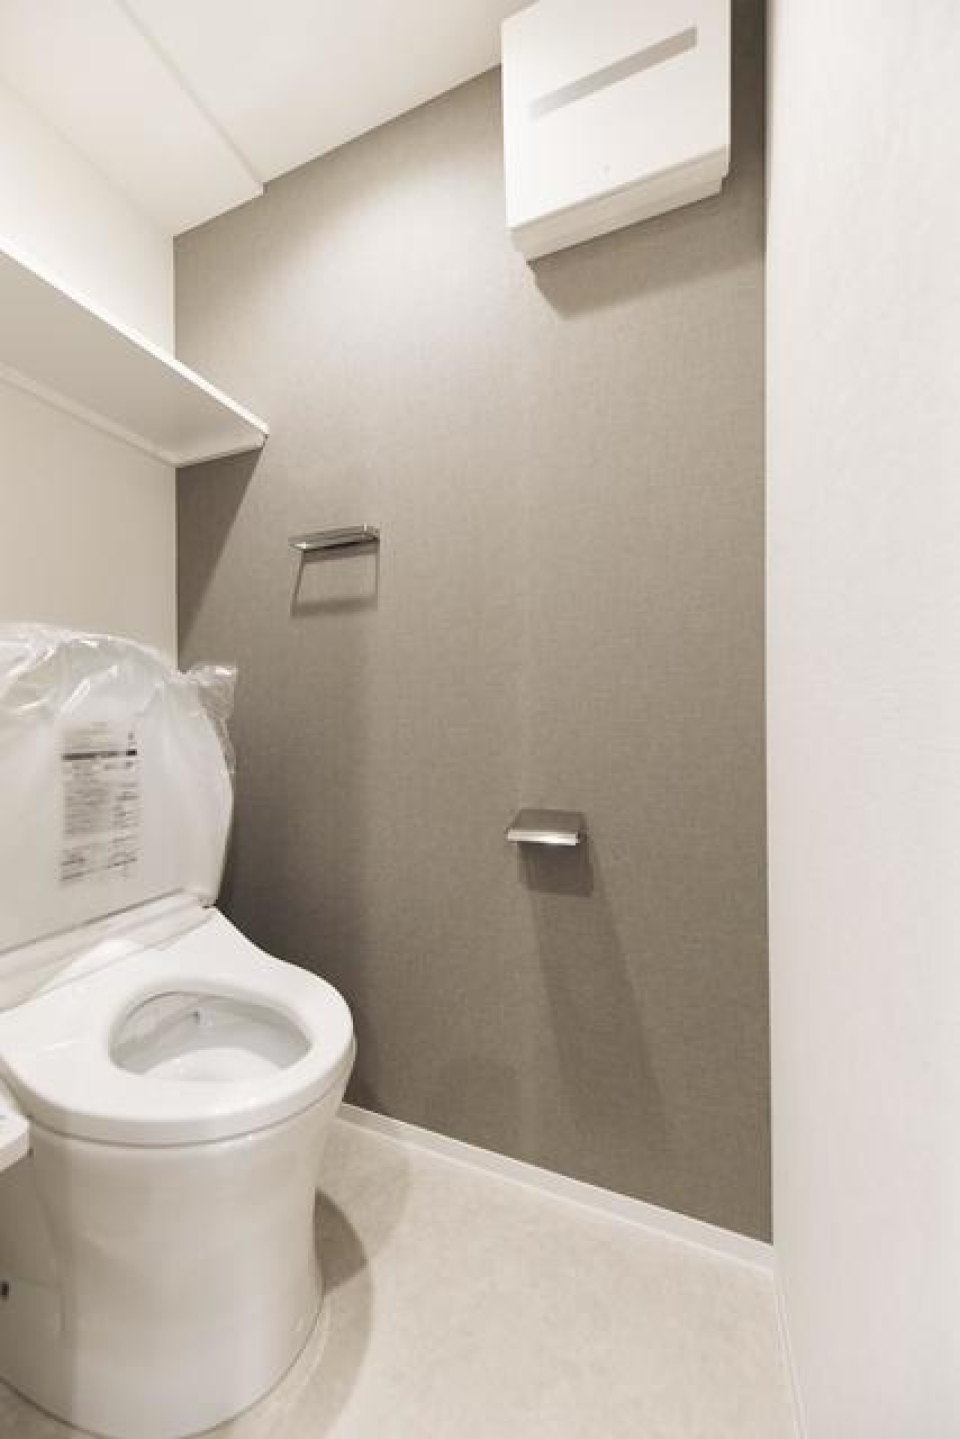 トイレです。頭上に収納できるスペースがあります。
※写真は同タイプ住戸です。